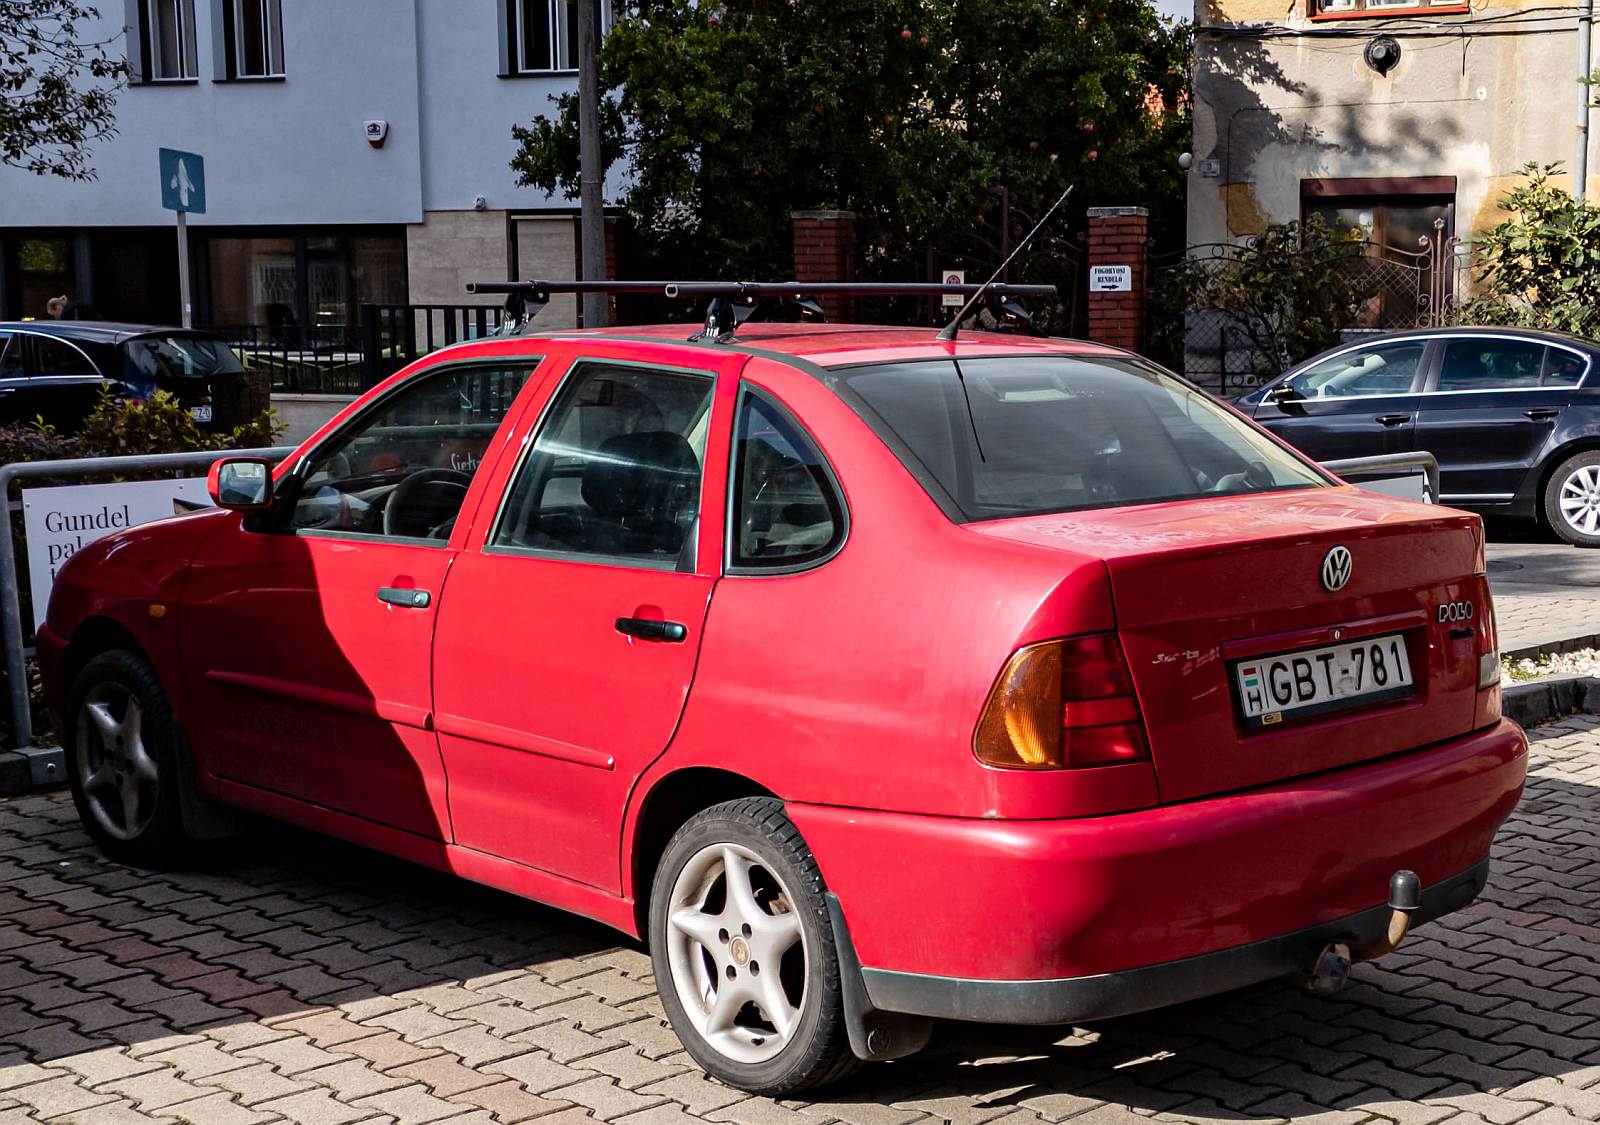 Rückansicht / Seitenansicht: VW Polo Classic, alias Stufenheck Polo in der dritten Generation. Foto: 09.2023.